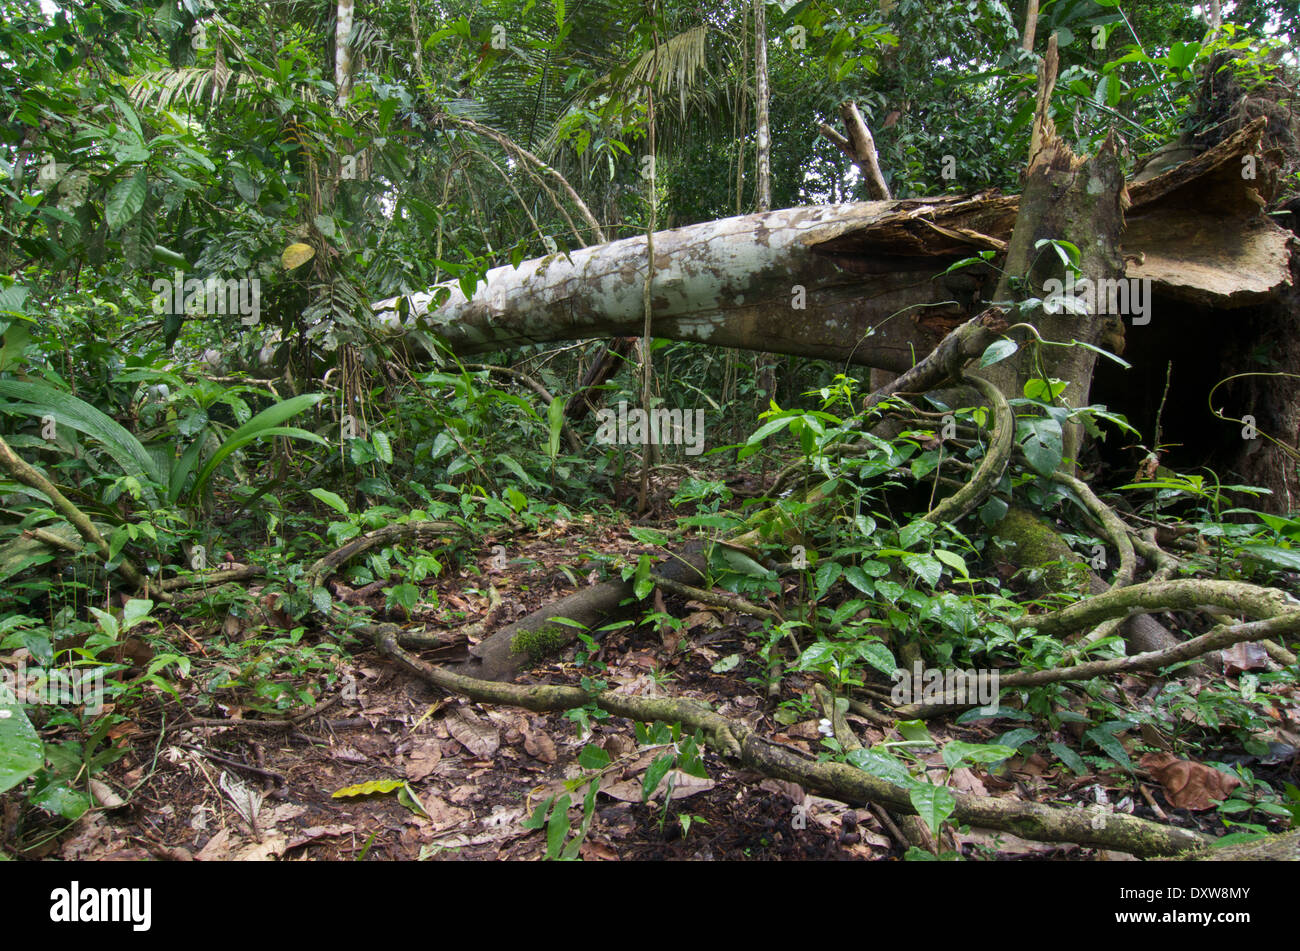 Ein umgestürzter Baum unterbricht einen kaum sichtbaren Pfad durch dichten Dschungel Laub im Amazonasbecken in Peru. Stockfoto